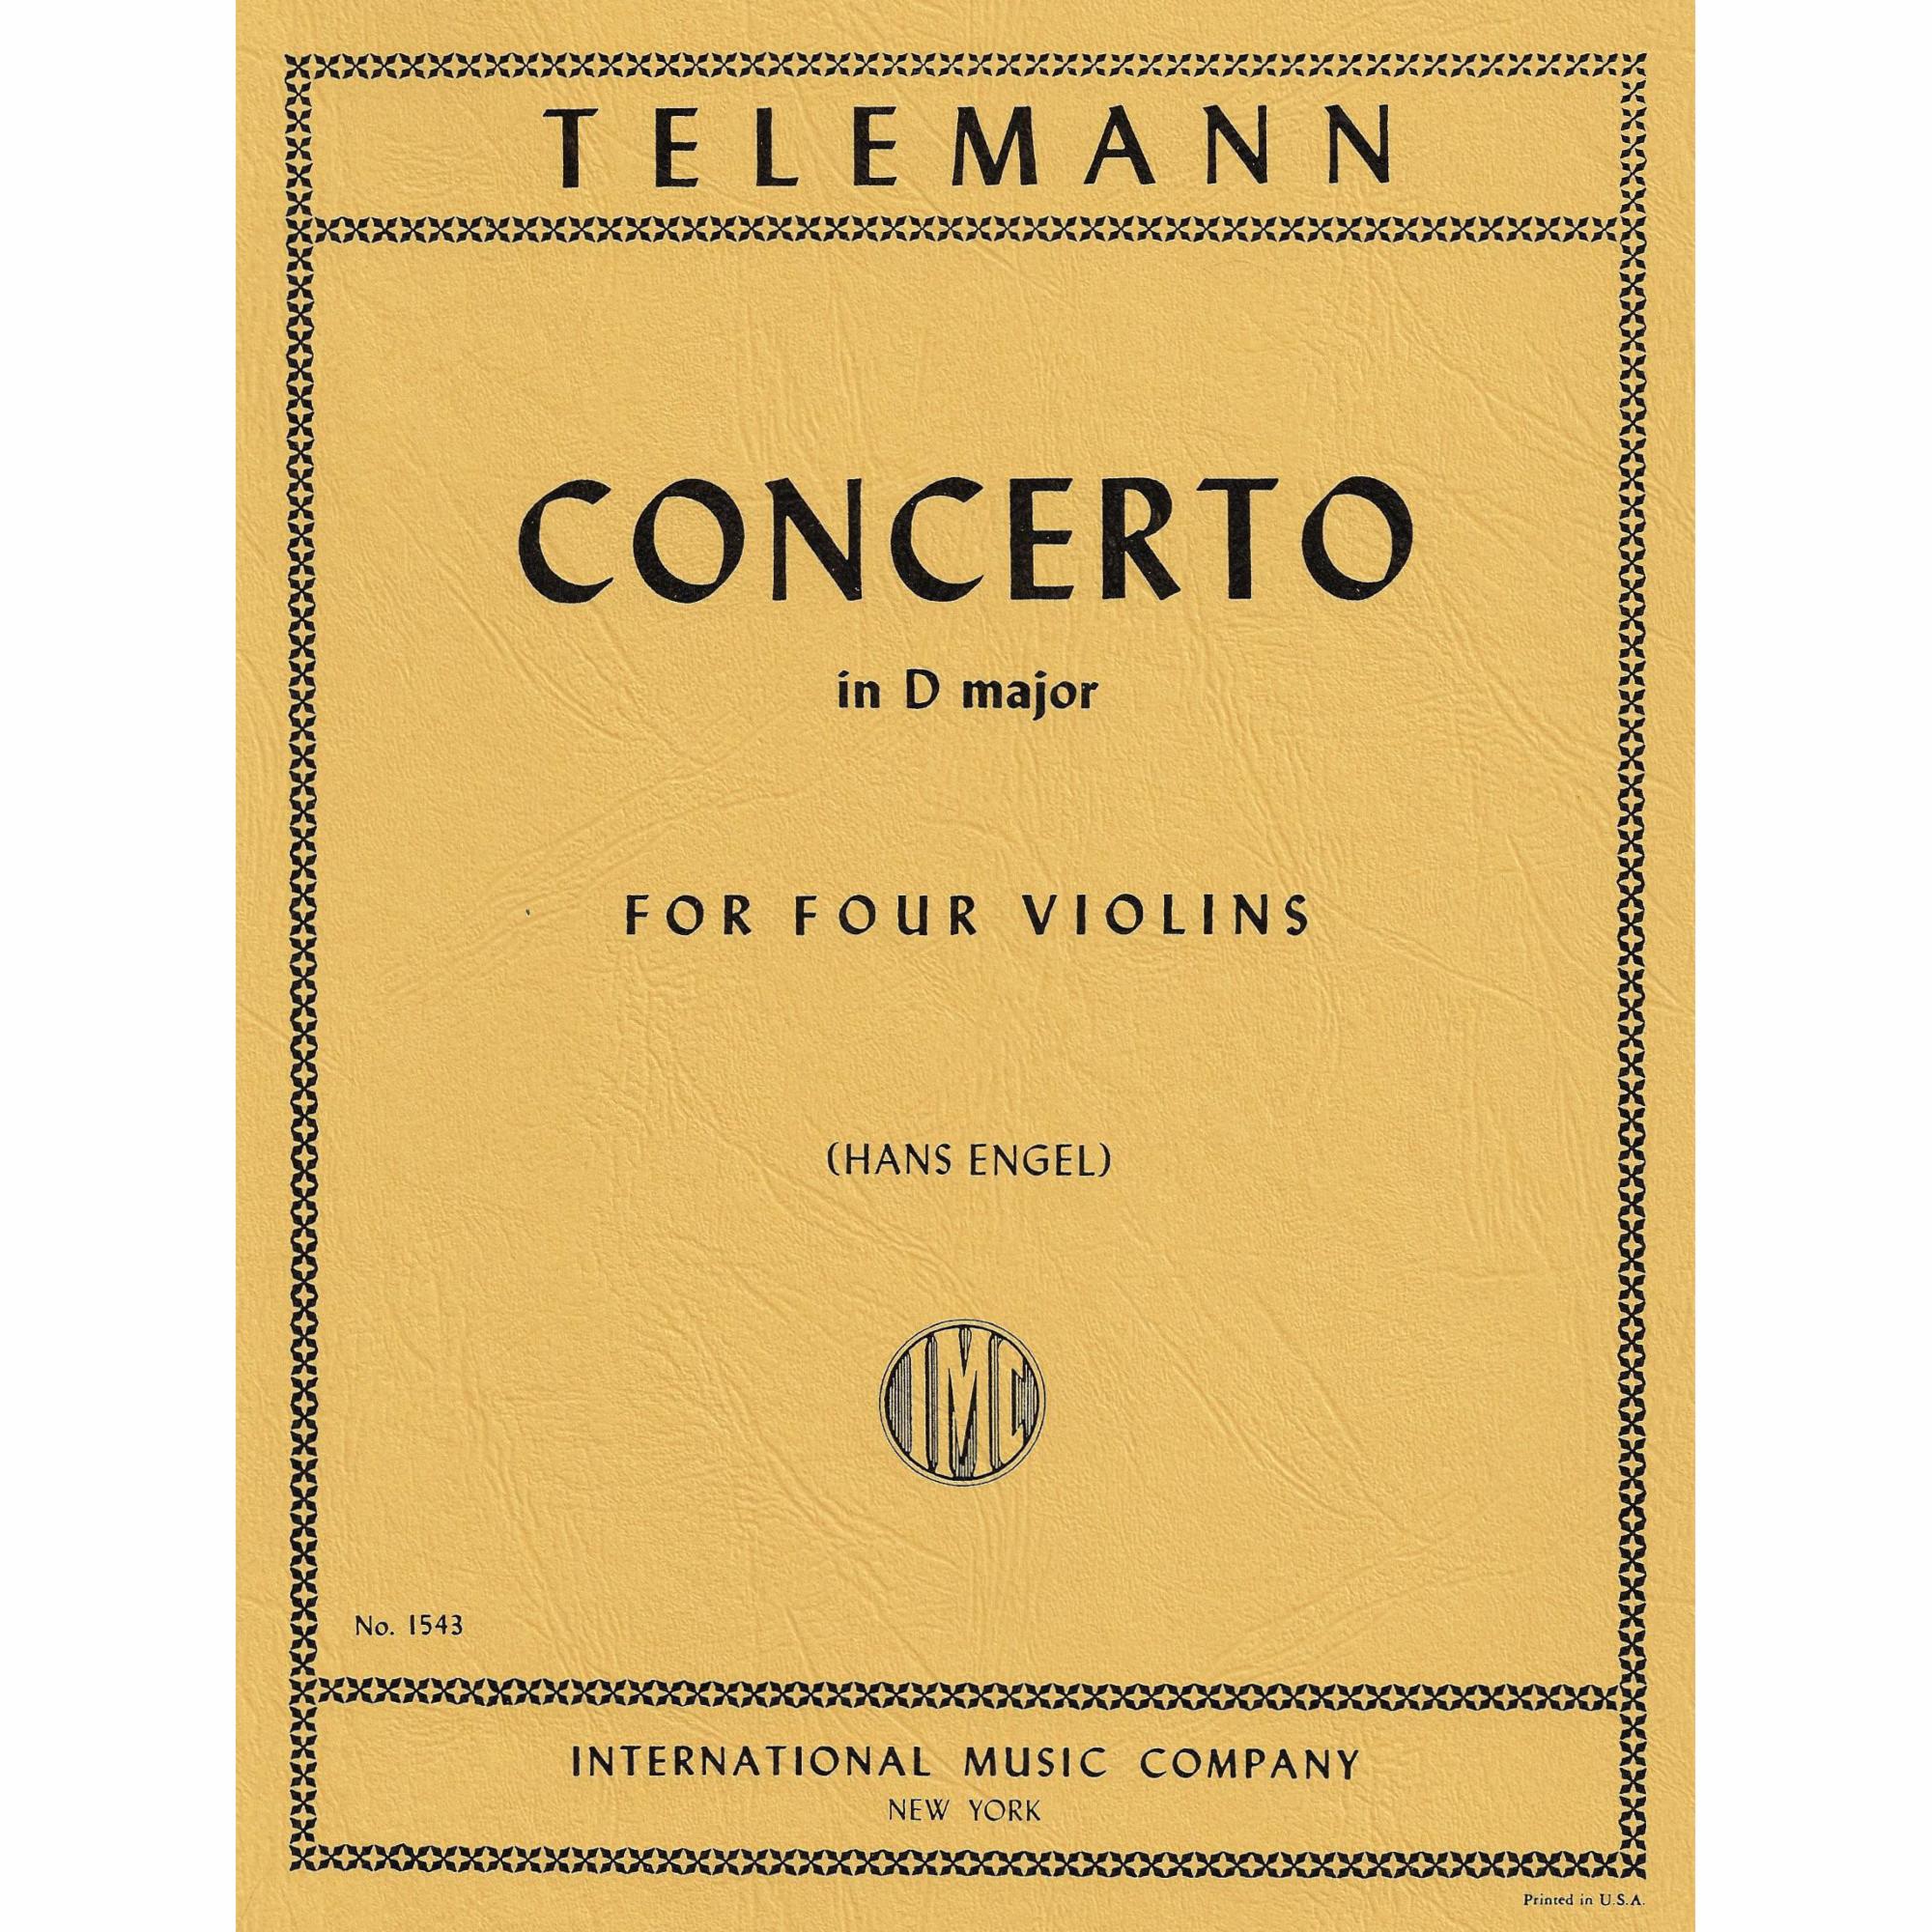 Telemann -- Concerto in D Major for Four Violins